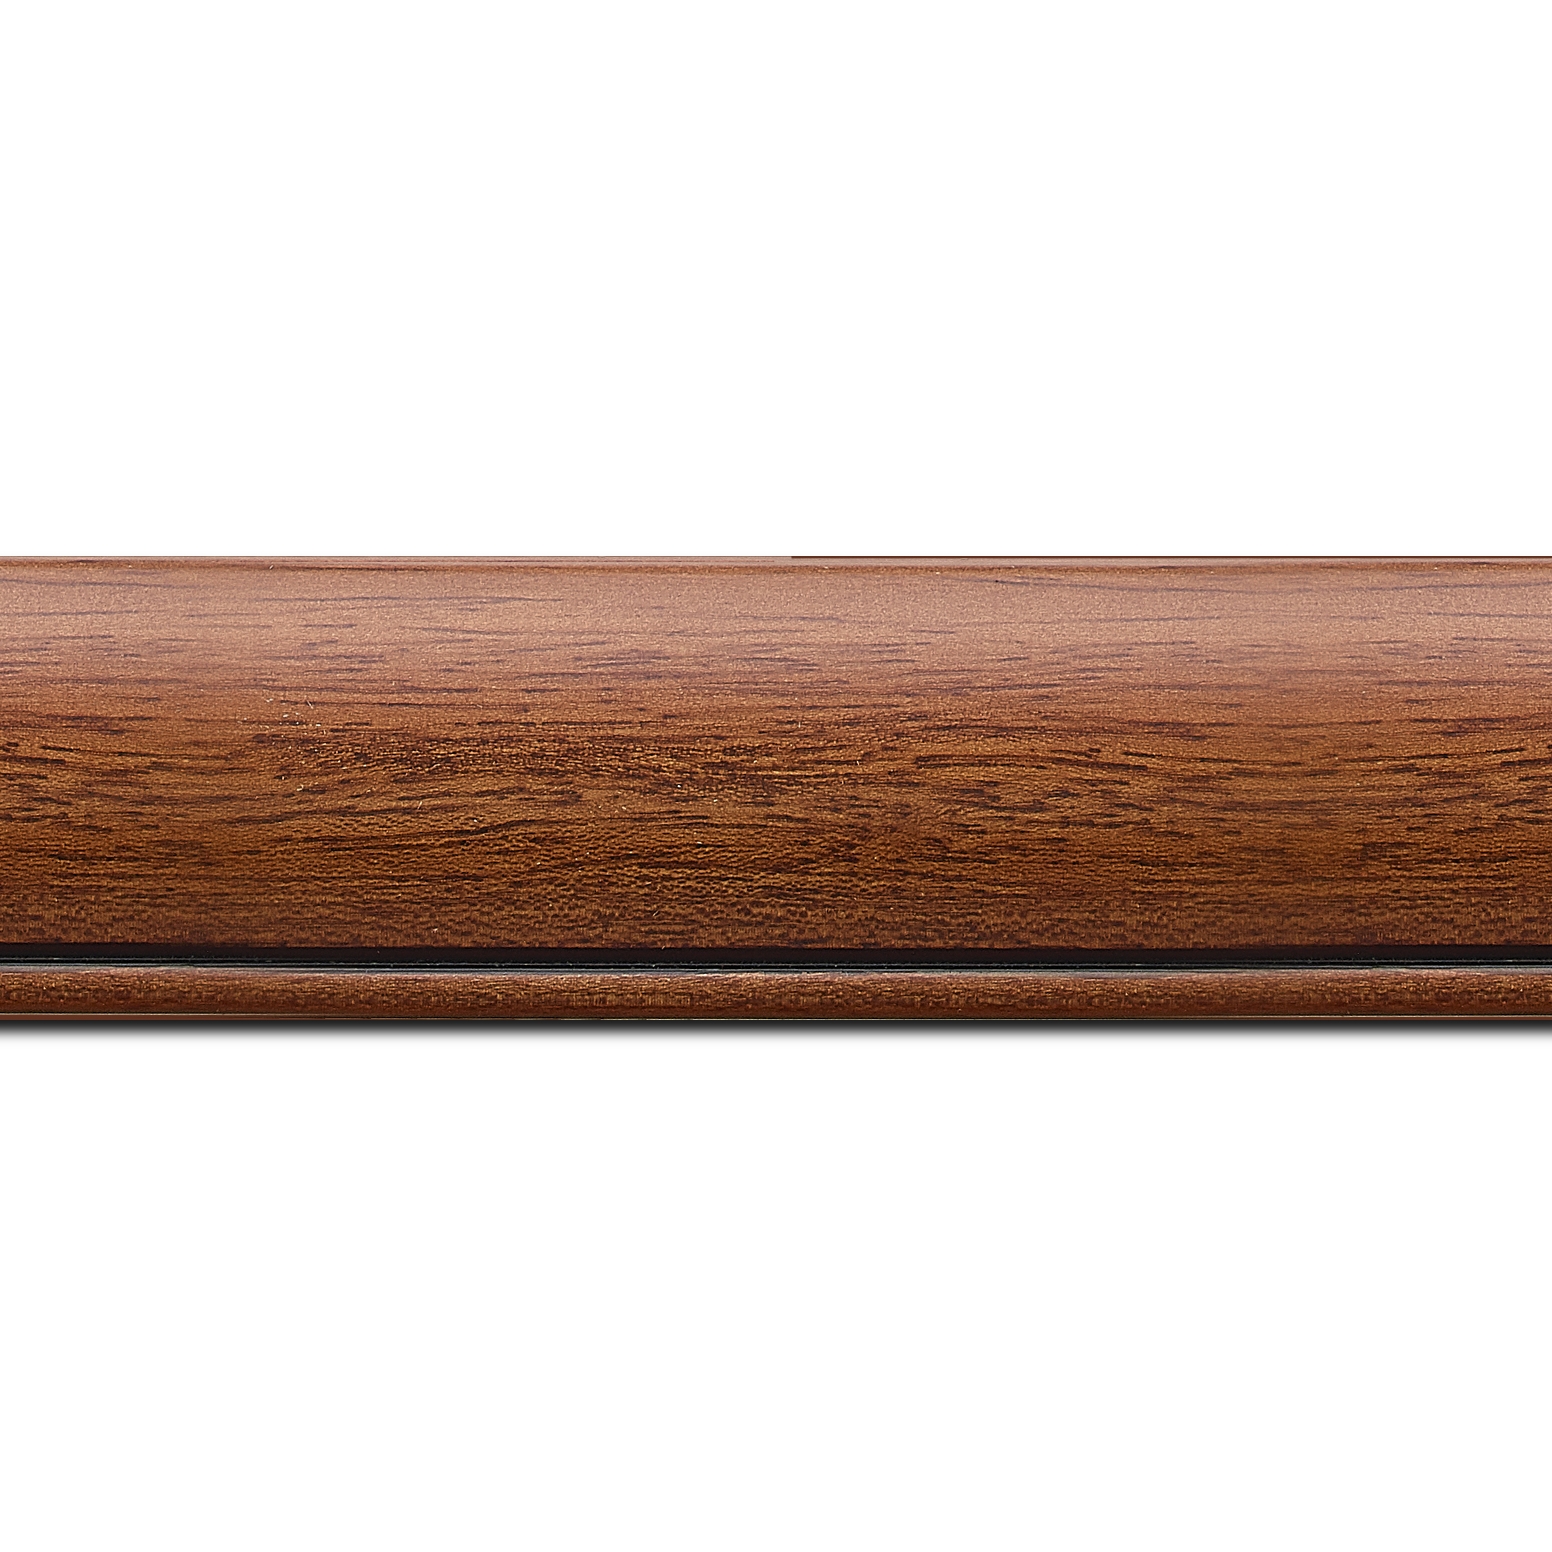 Baguette longueur 1.40m bois profil arrondi largeur 4.7cm couleur marron ton bois satiné rehaussé d'un filet noir